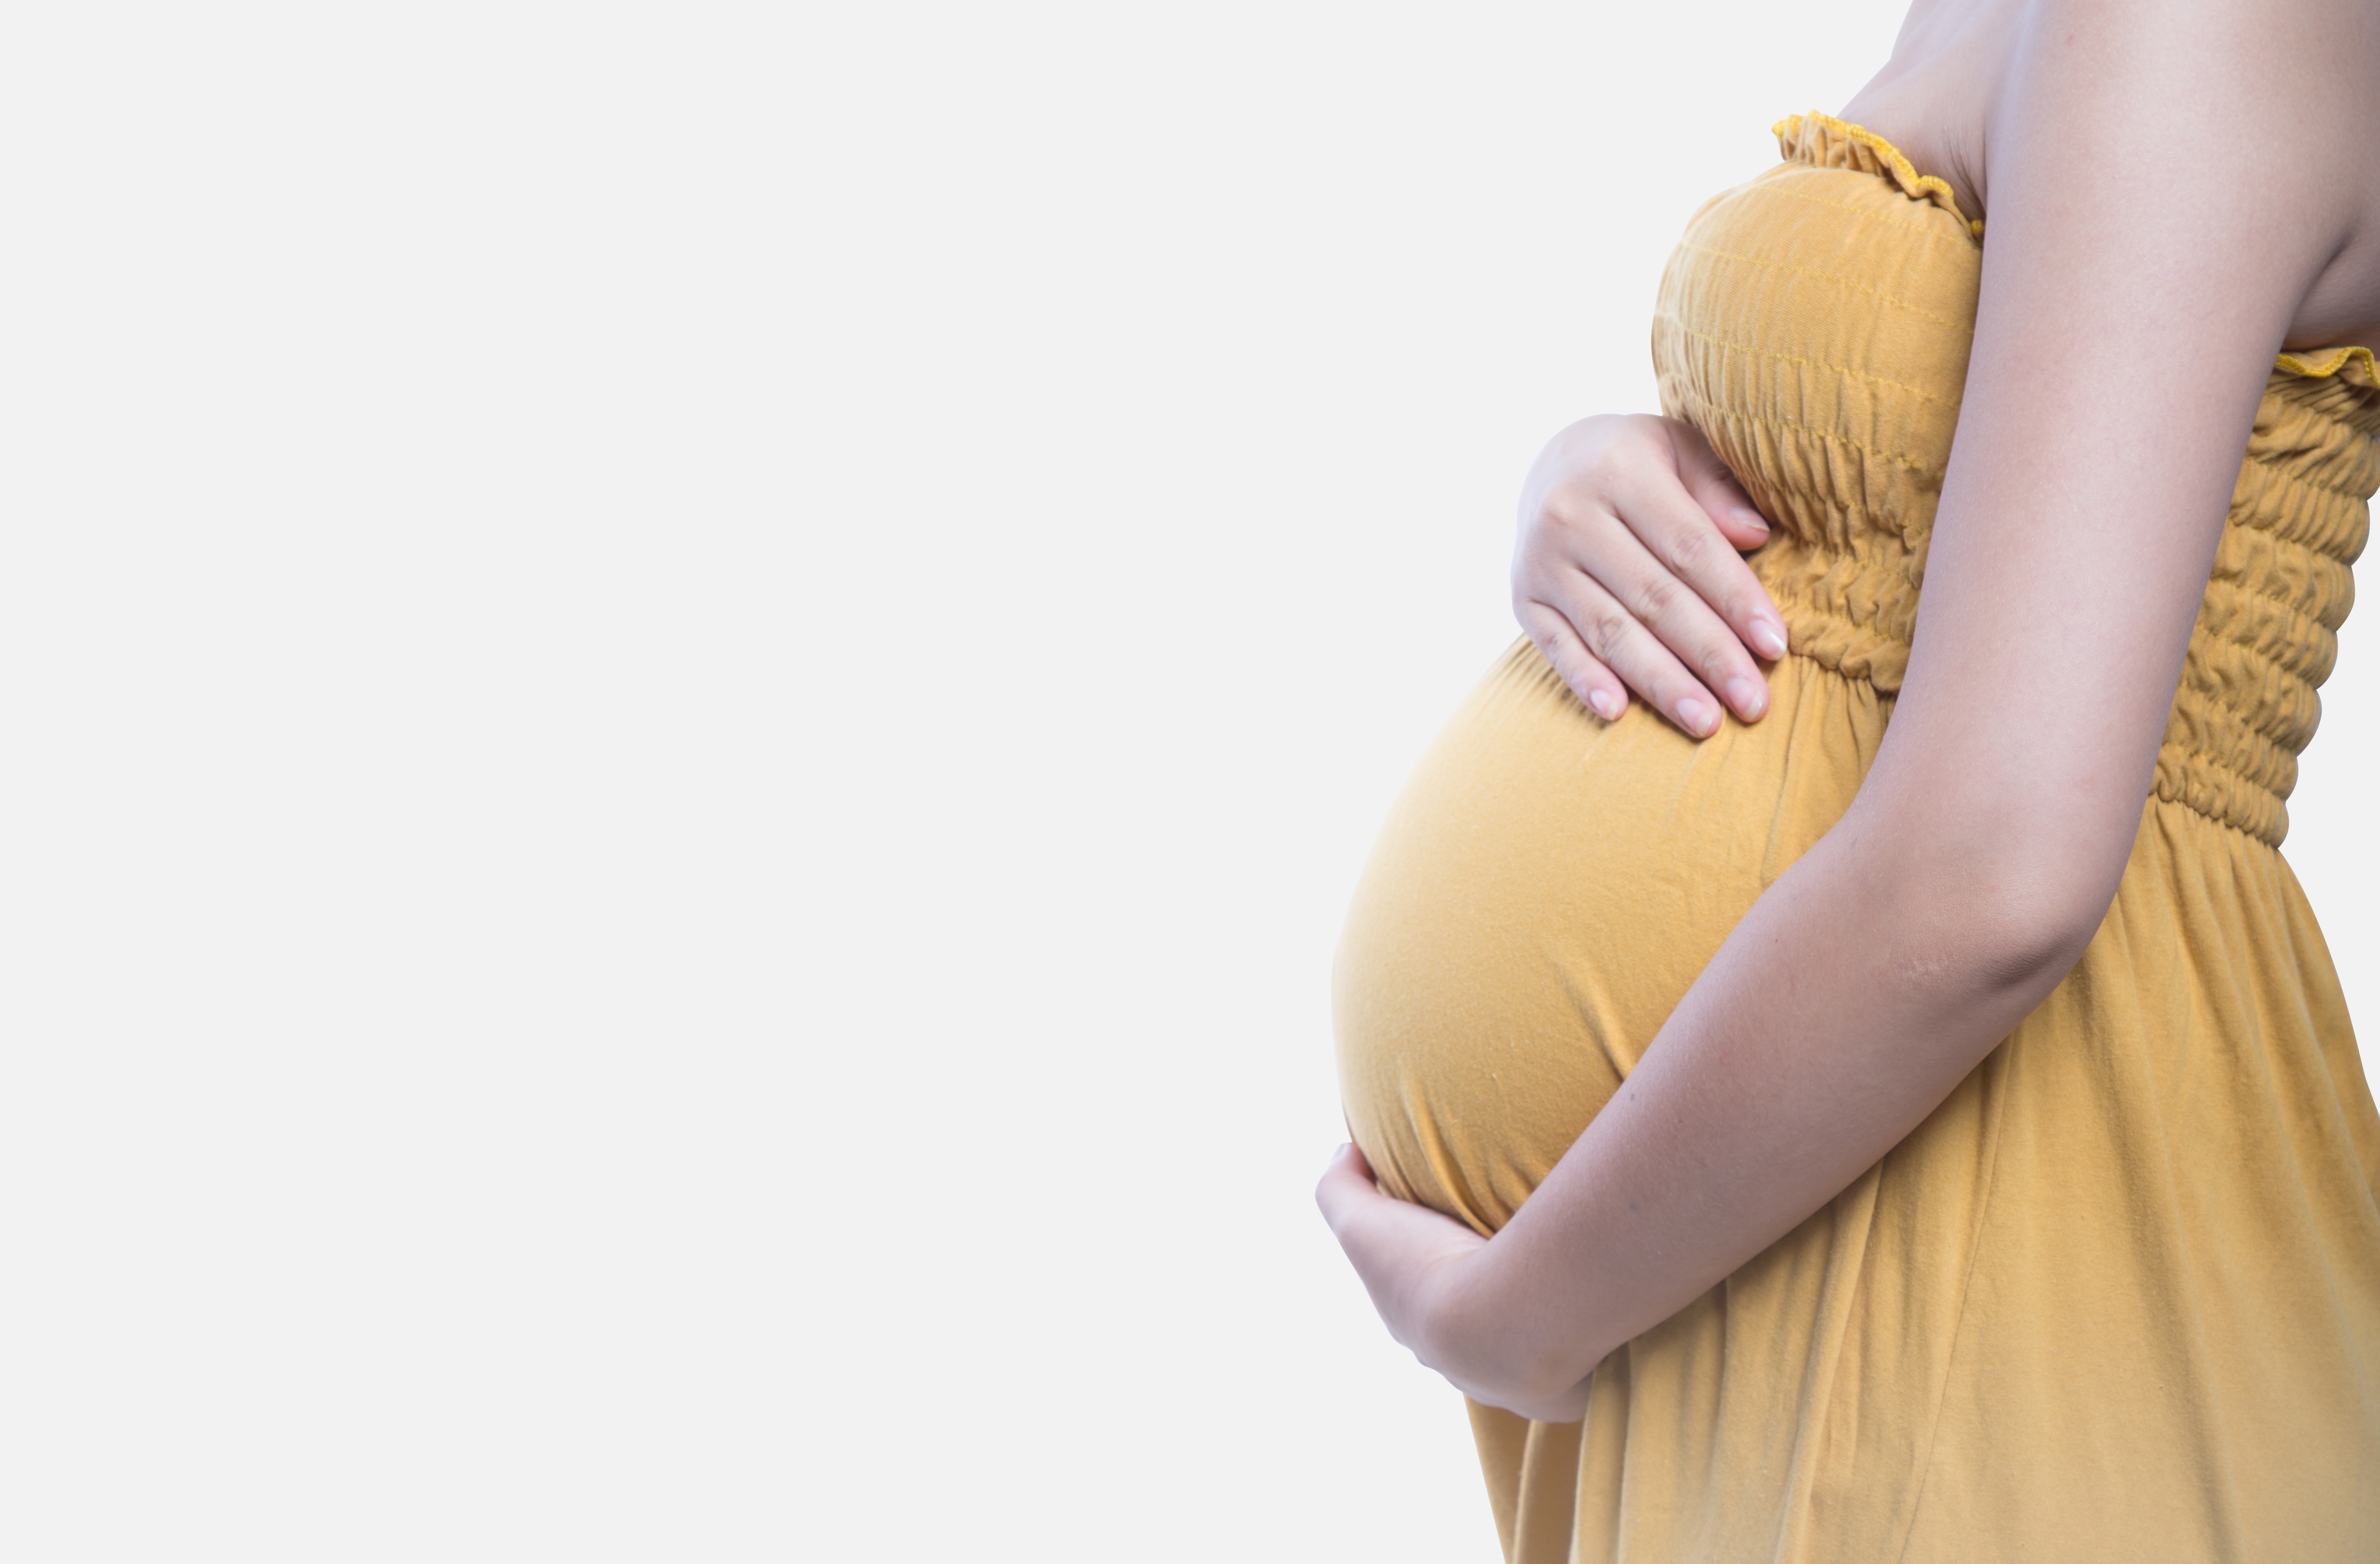 नेपालमा जन्मदर ह्वात्तै घट्यो, कलिलो उमेरमा गर्भवती हुनेमा कर्णालीका किशोरी बढी